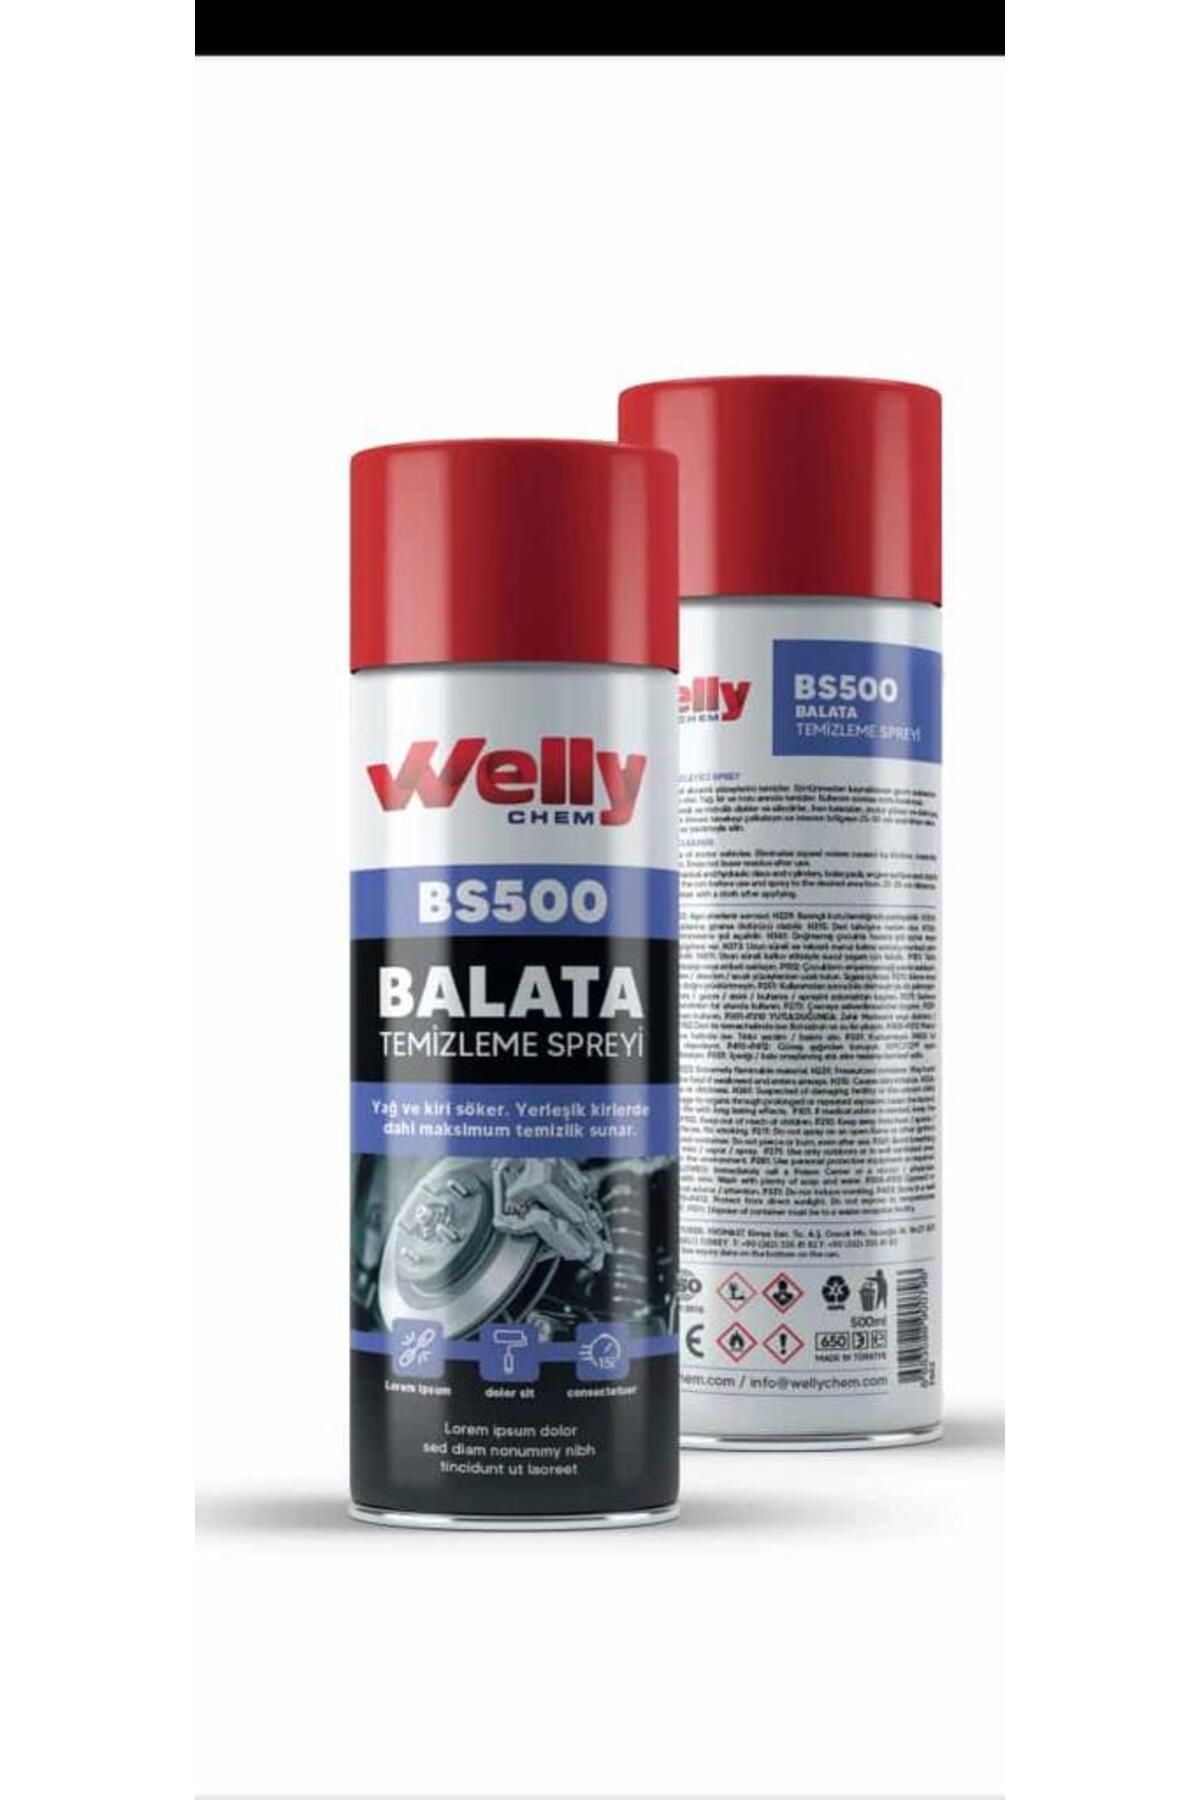 WELLY Chem Bs500 Balata Spreyi 500ml